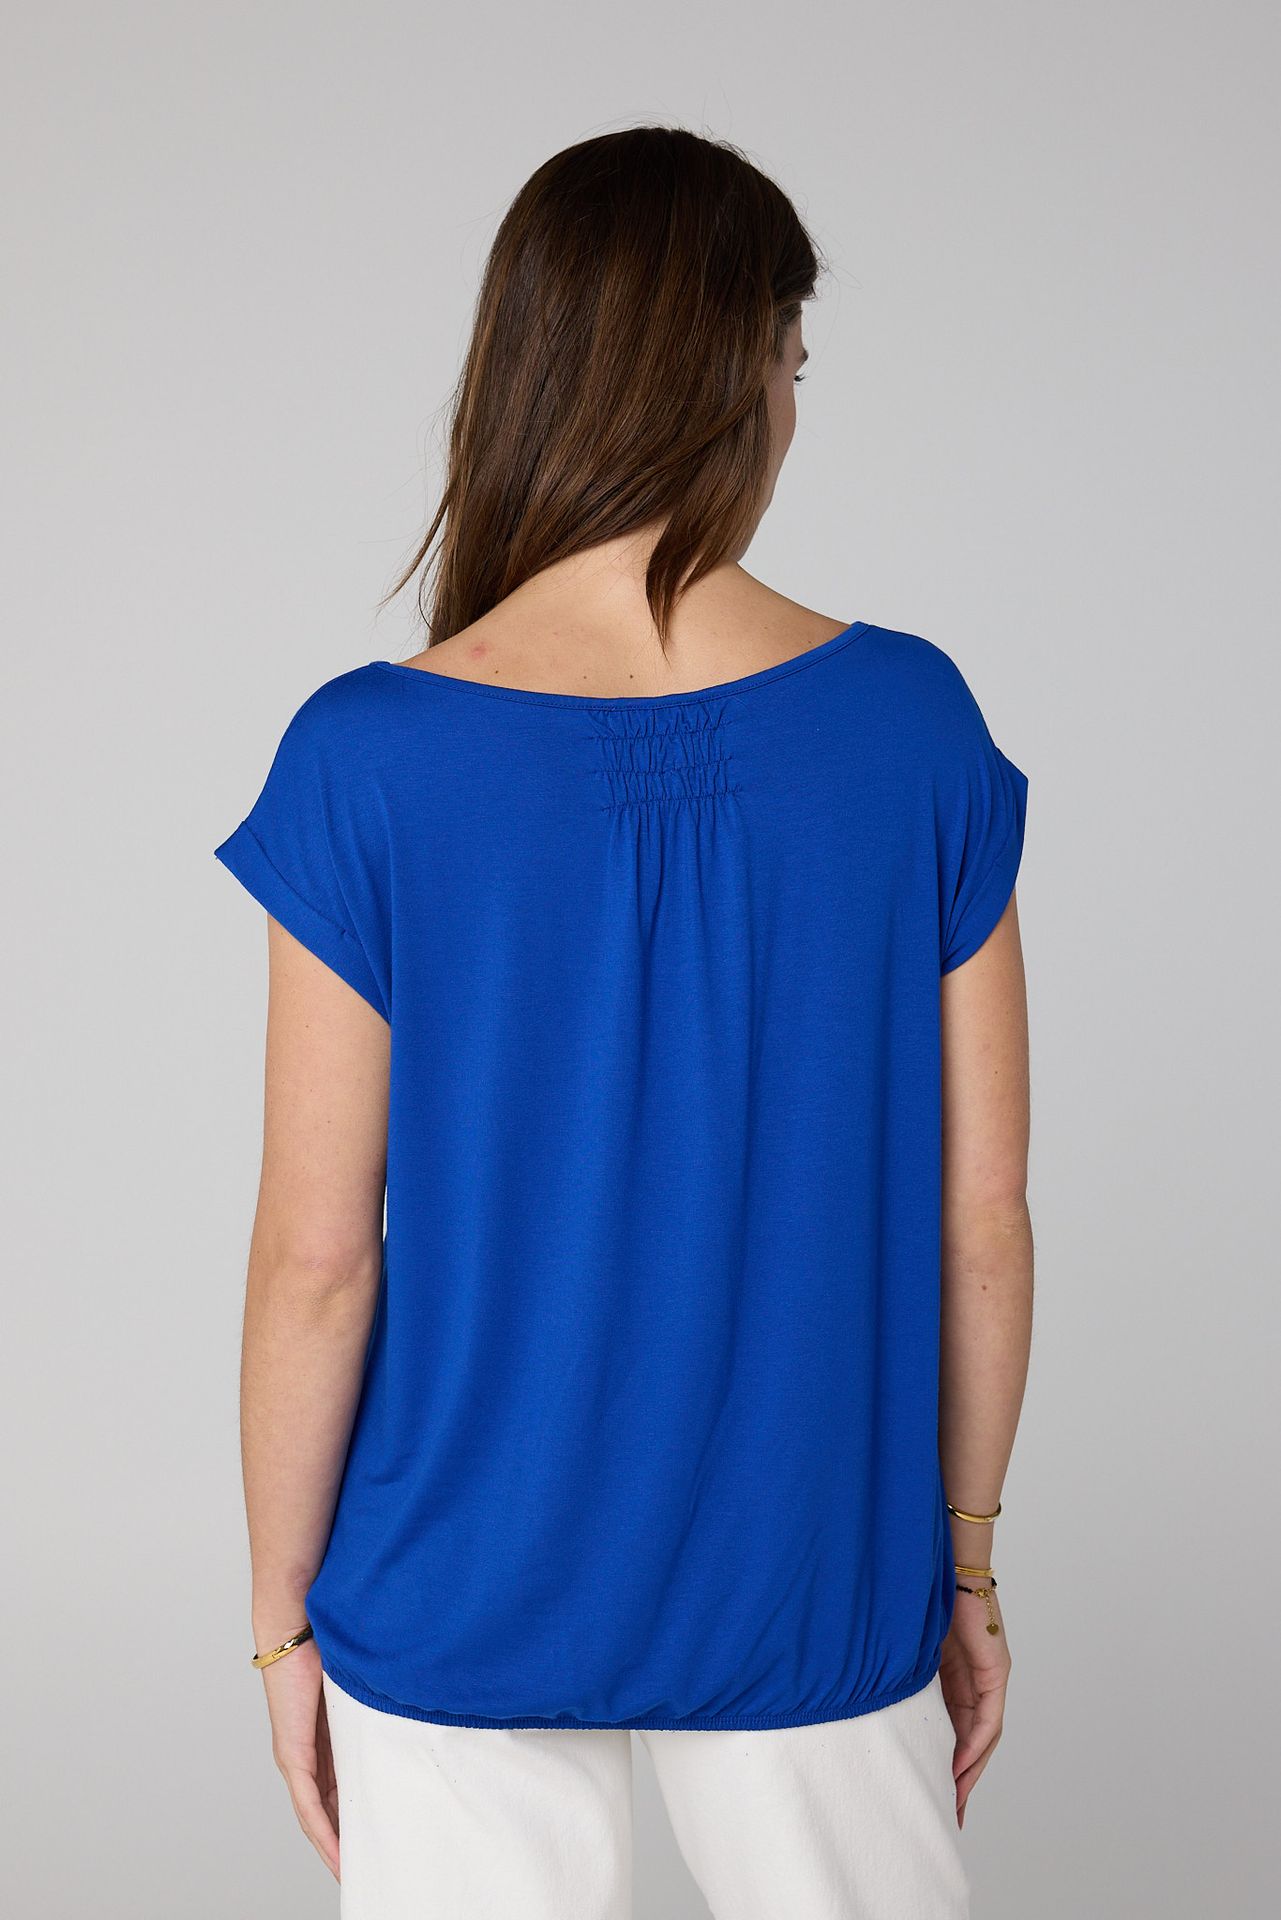 Norah Shirt Marije kobaltblauw cobalt 203656-468